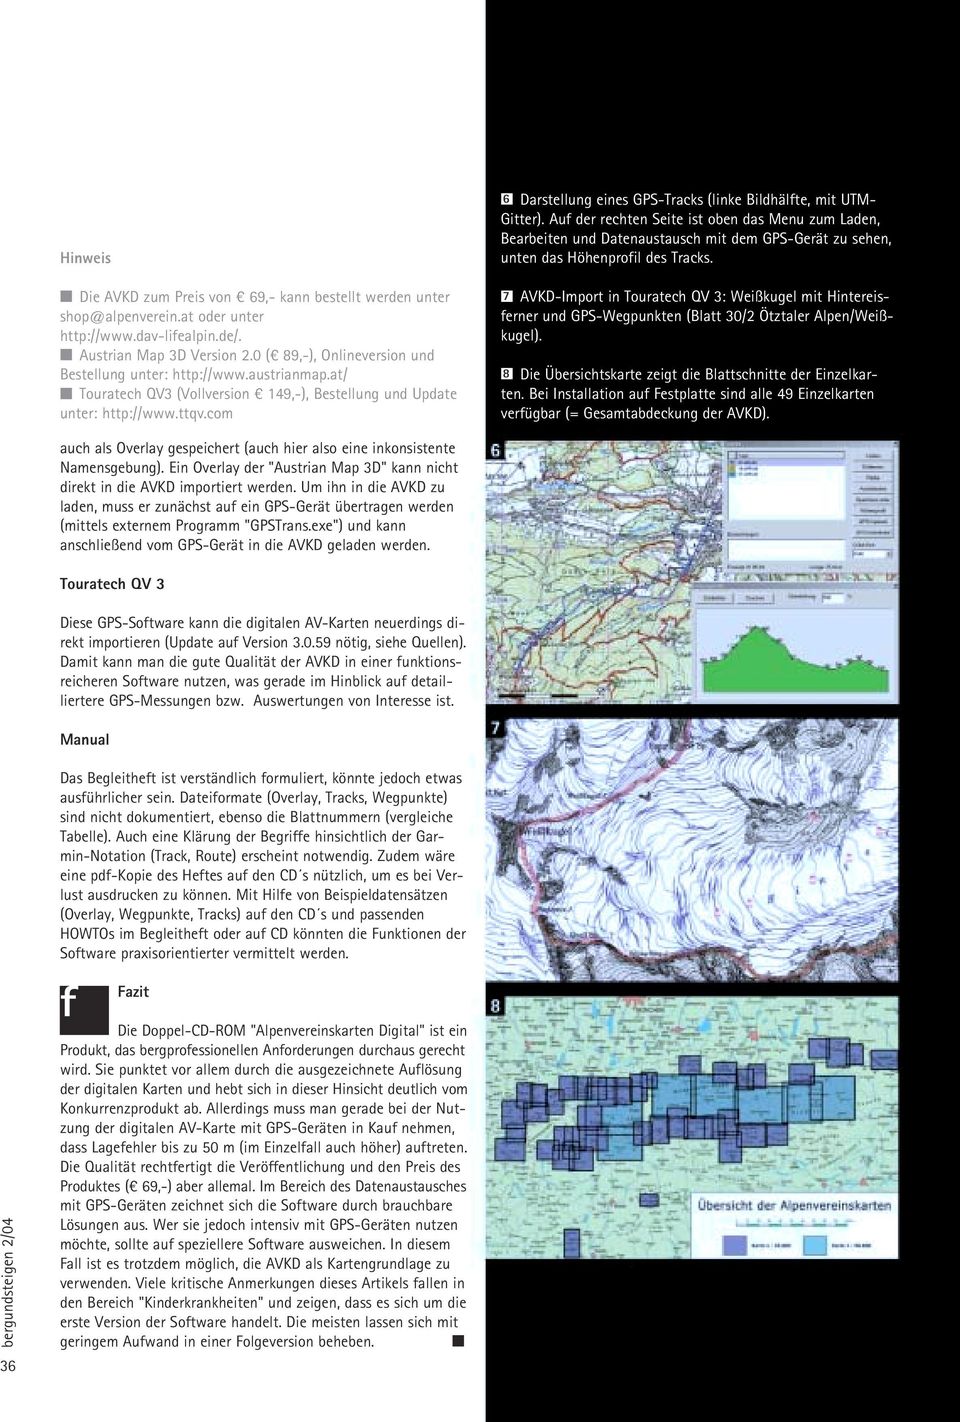 com 6 Darstellung eines GPS-Tracks (linke Bildhälfte, mit UTM- Gitter).